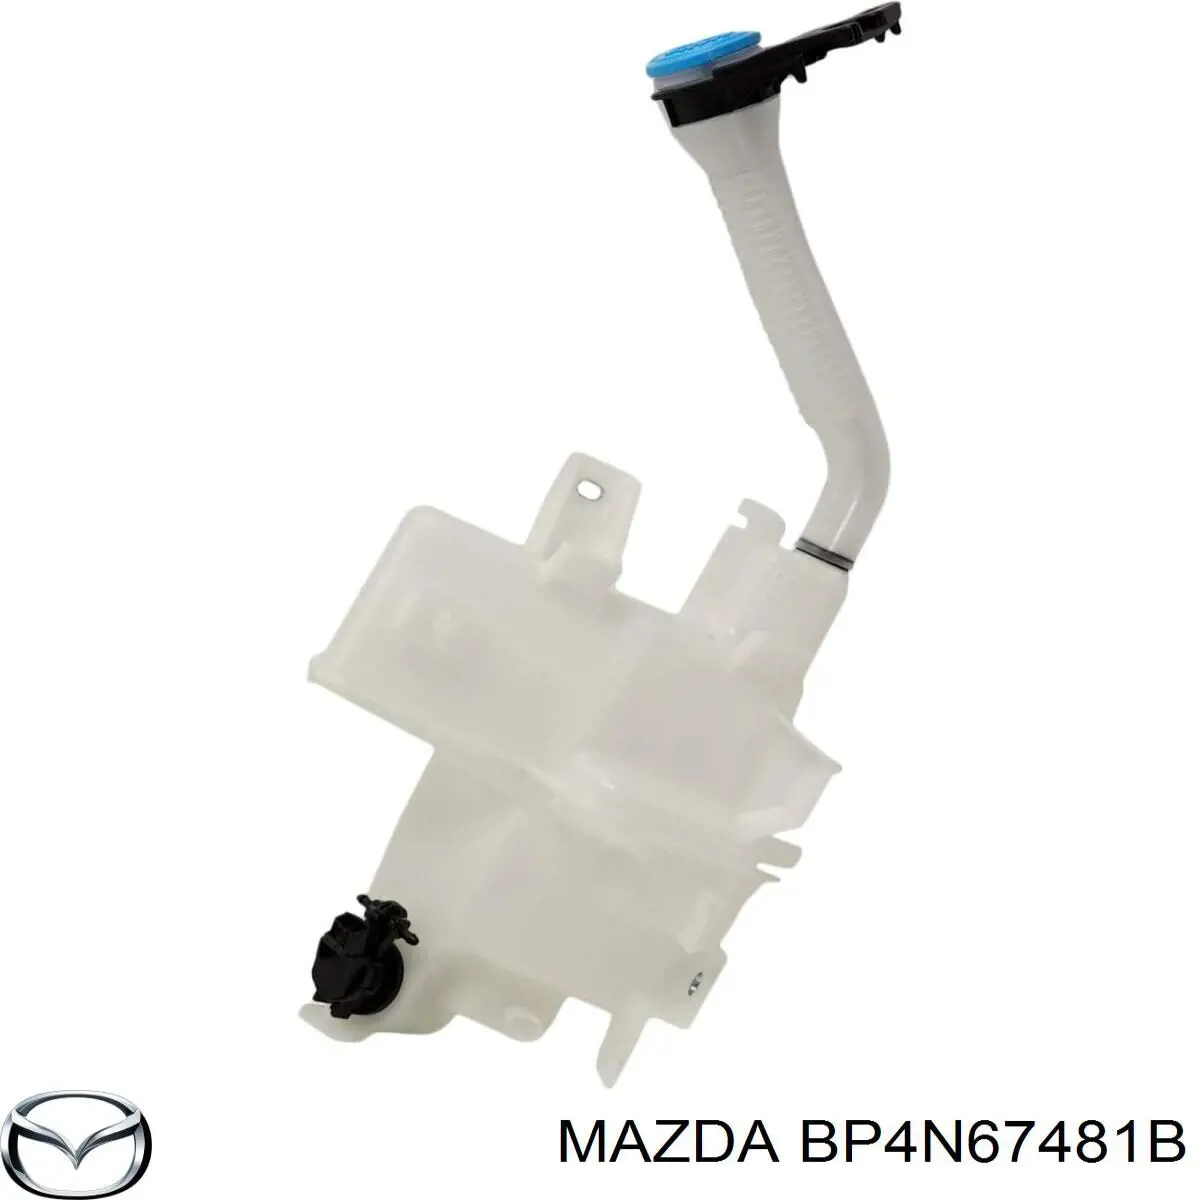 BP4N67481B Mazda depósito de agua del limpiaparabrisas